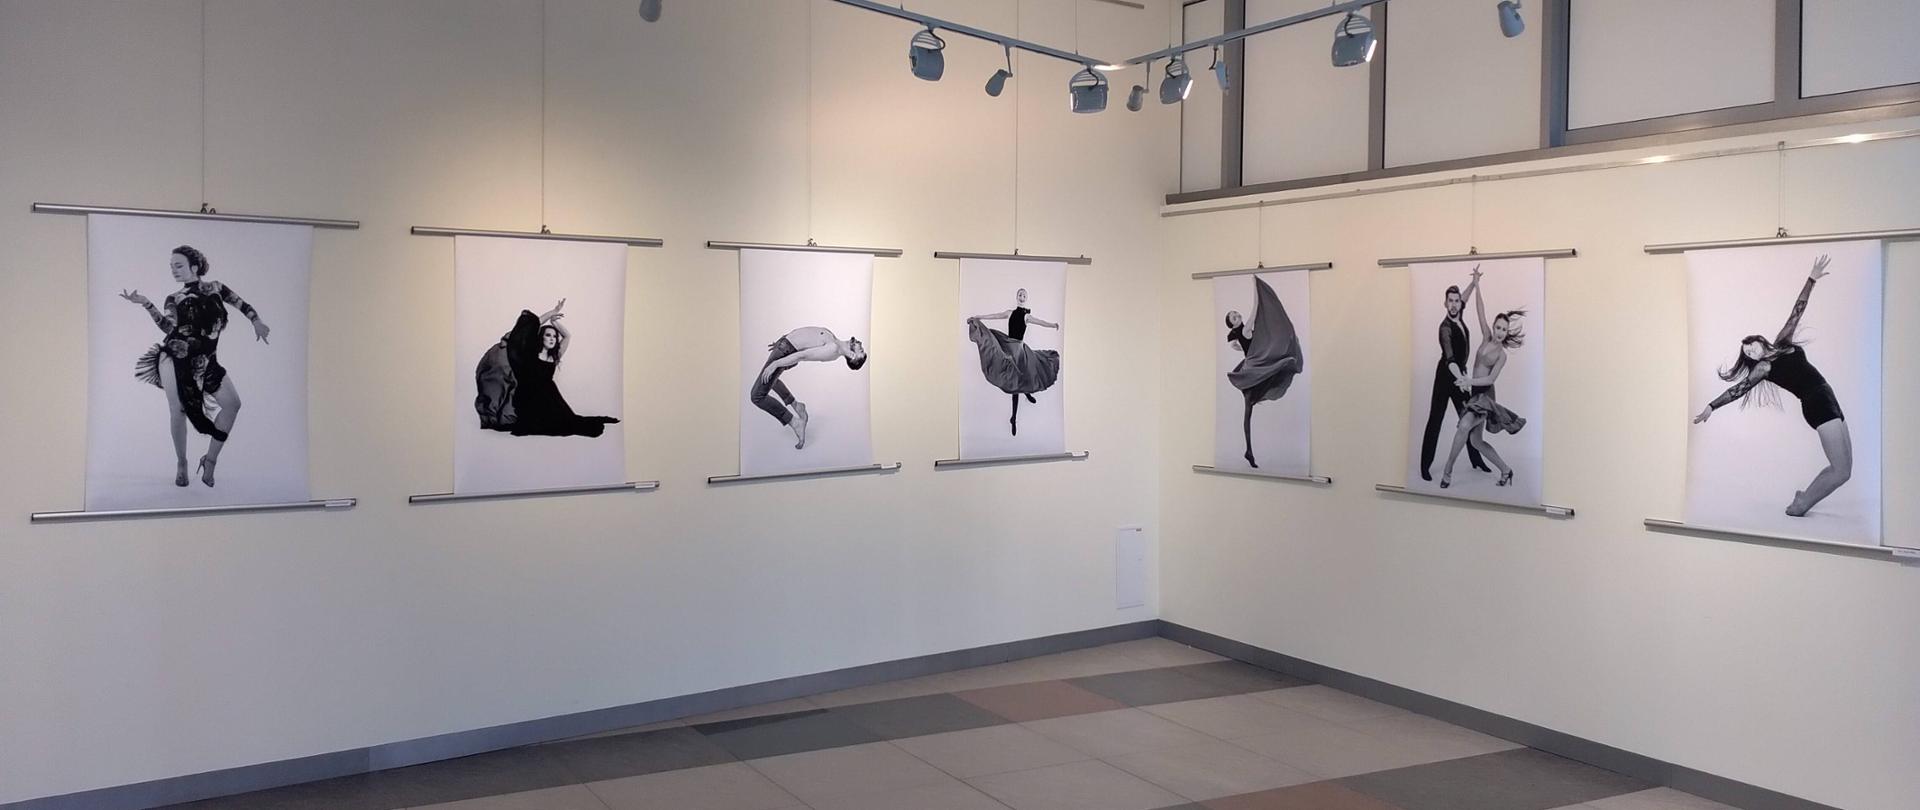 Na białej ścianie wiszą zdjęcia z wystawy fotograficznej "Taniec obrazów - obraz tańca".